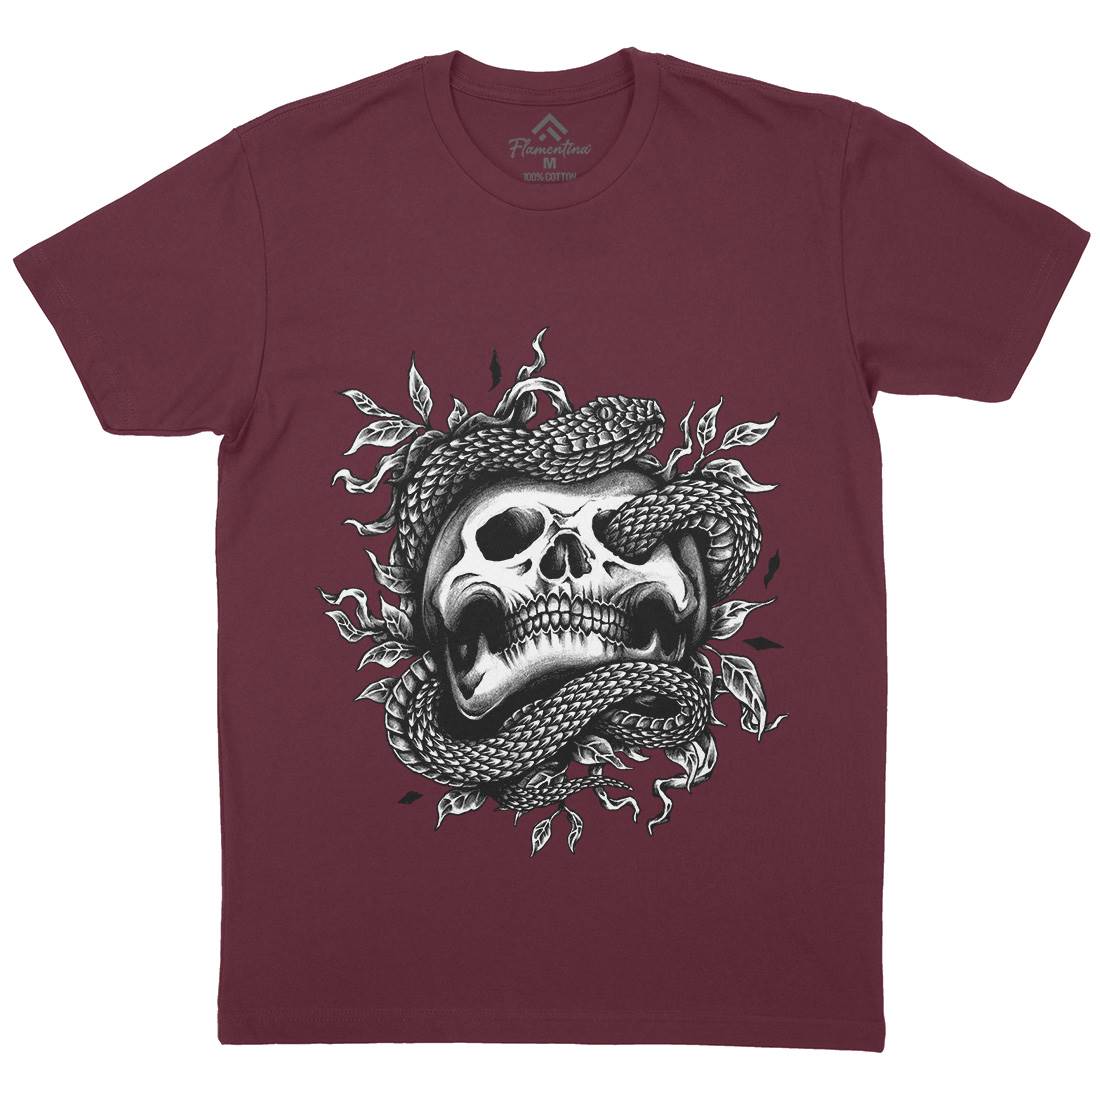 Skull Snake Mens Organic Crew Neck T-Shirt Navy A467